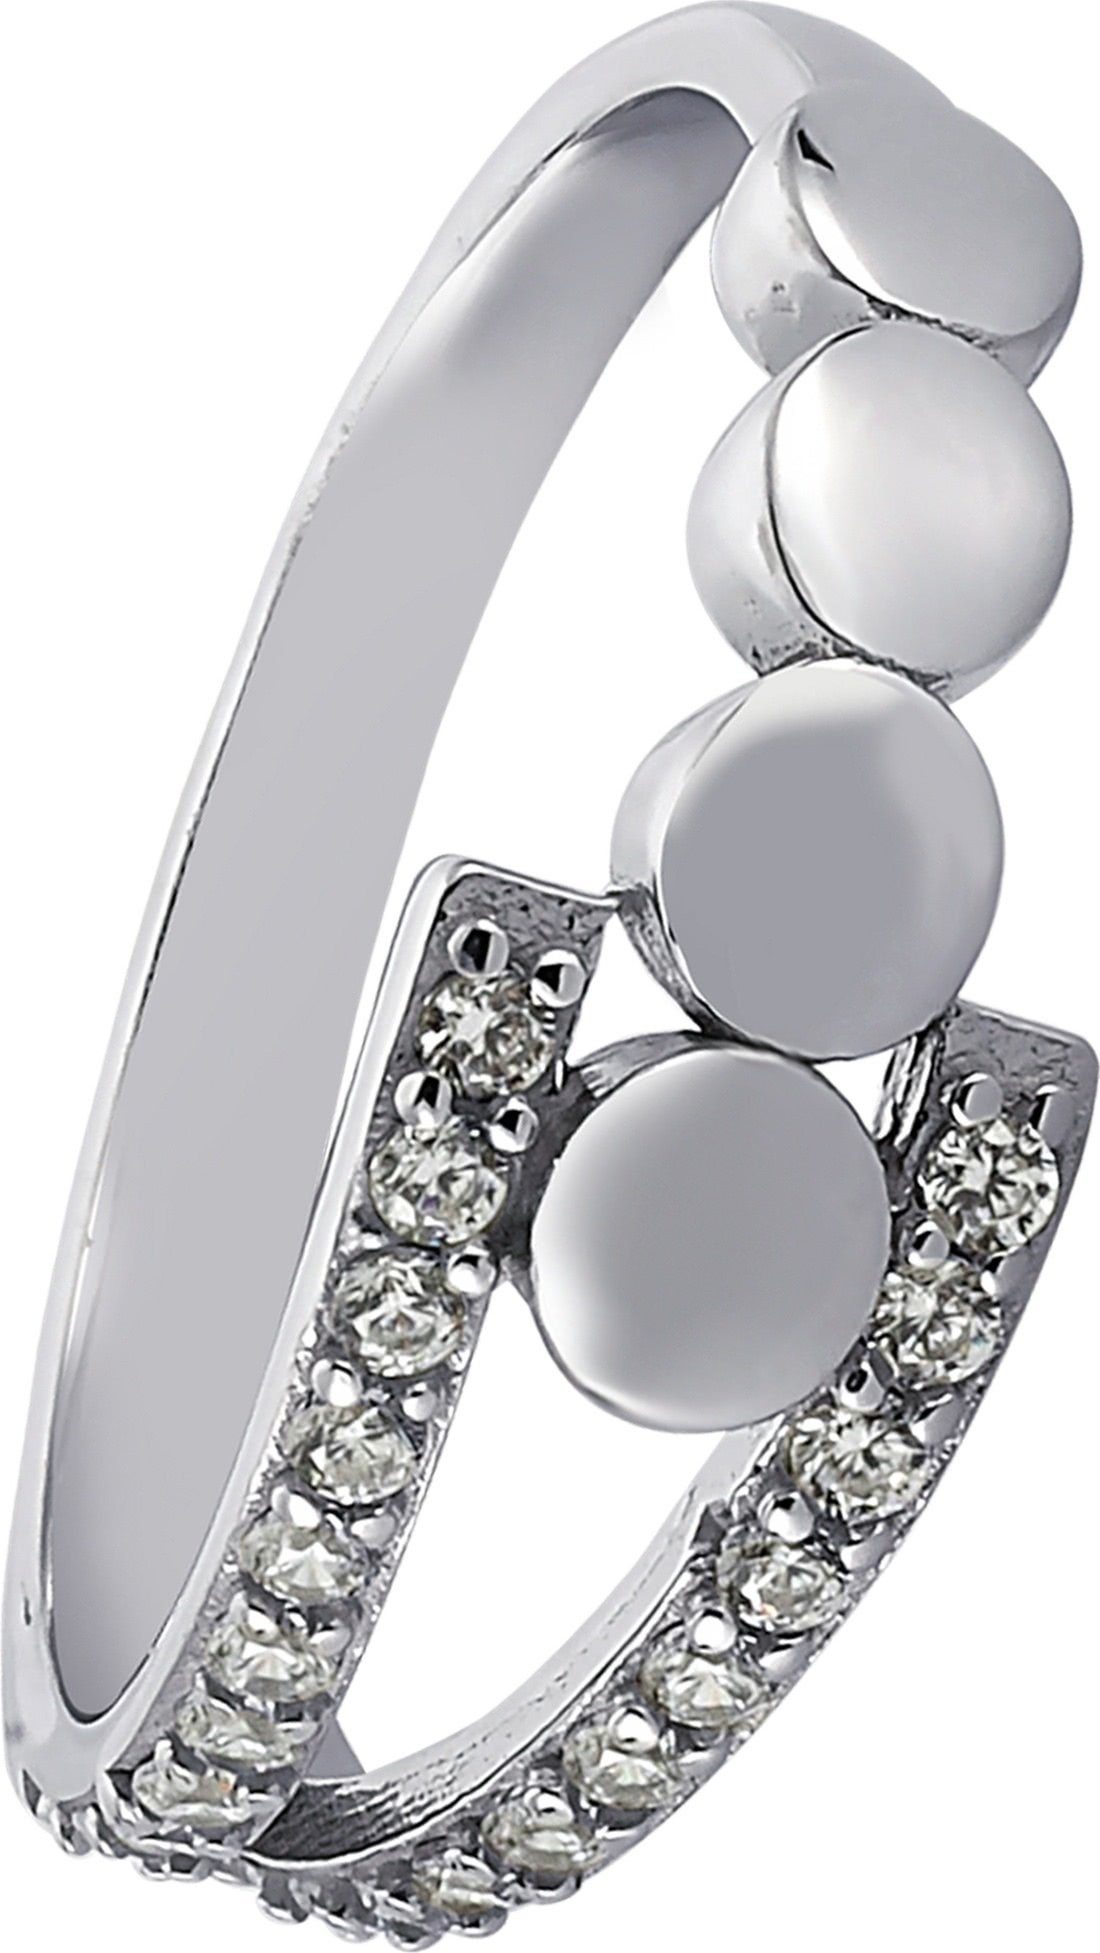 (18,5), Silberring 925 für Fingerring Balia (Fingerring), Sterling 58 Damen Silber (Kreise) Silber mit Ring Balia 925 weißen Größe